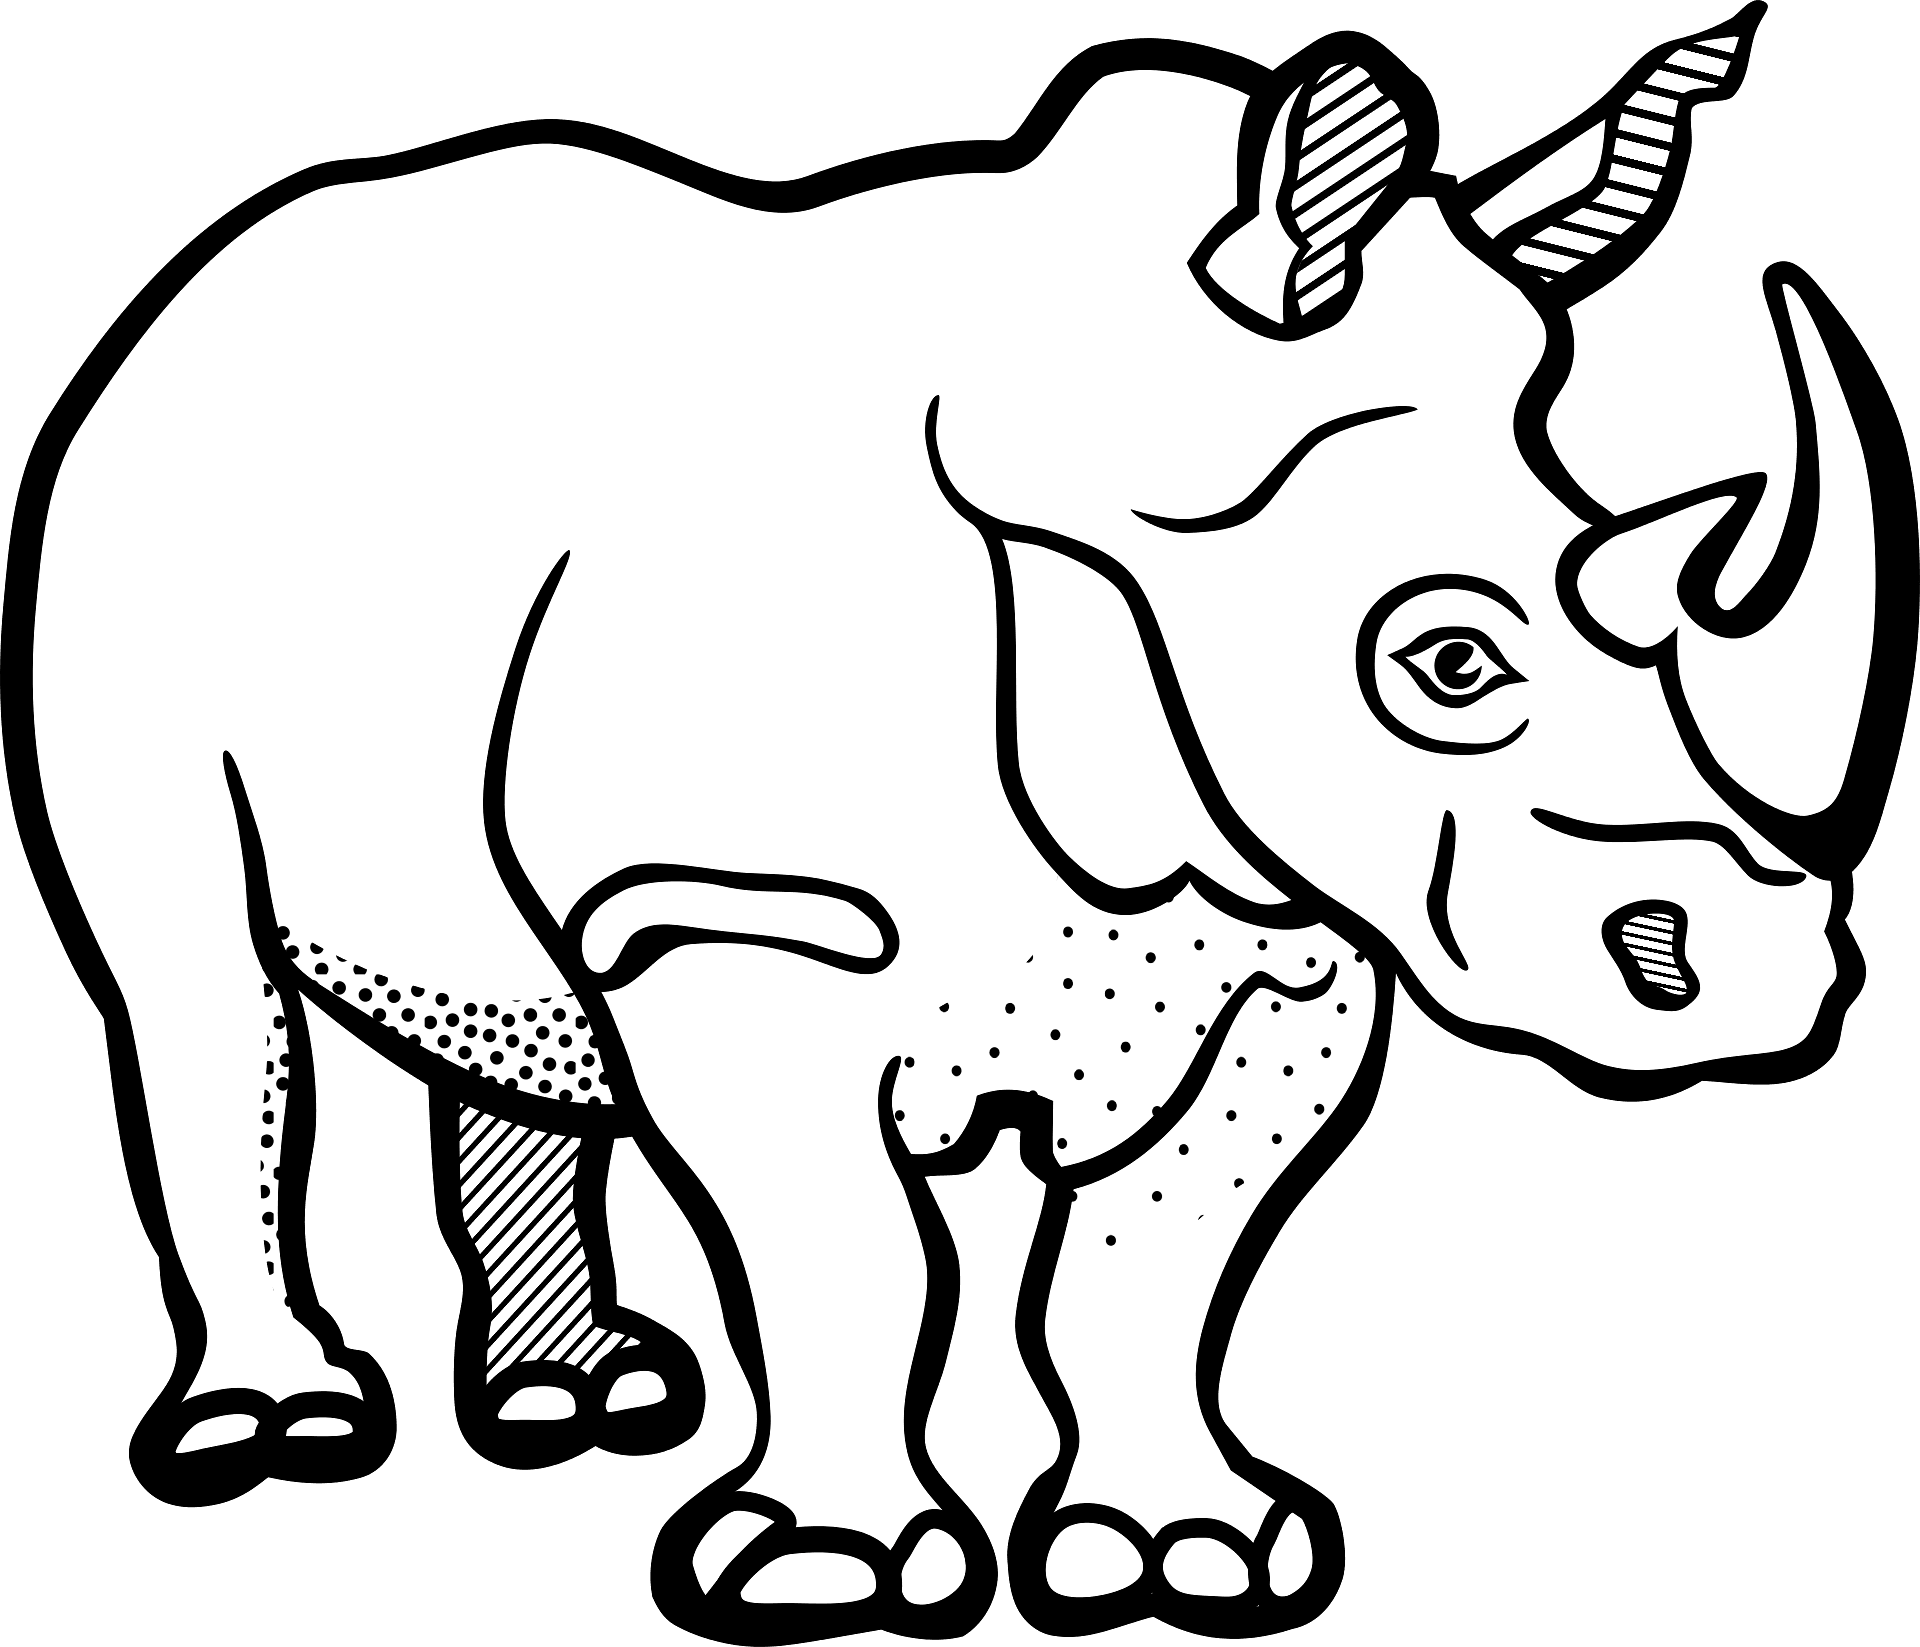 صفحة التلوين من وحيد القرن